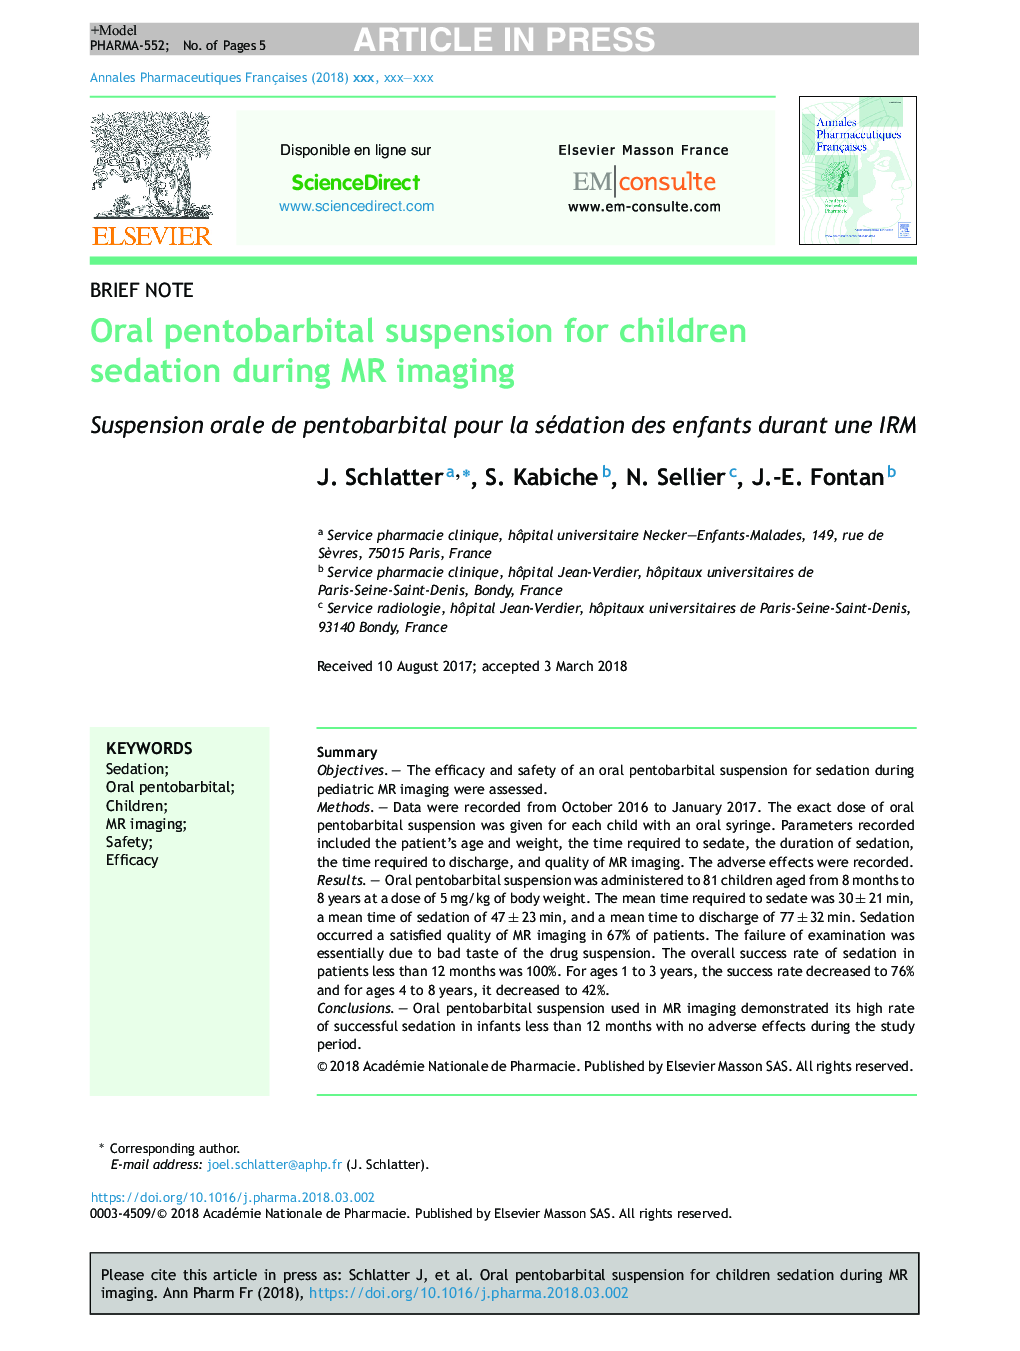 Oral pentobarbital suspension for children sedation during MR imaging